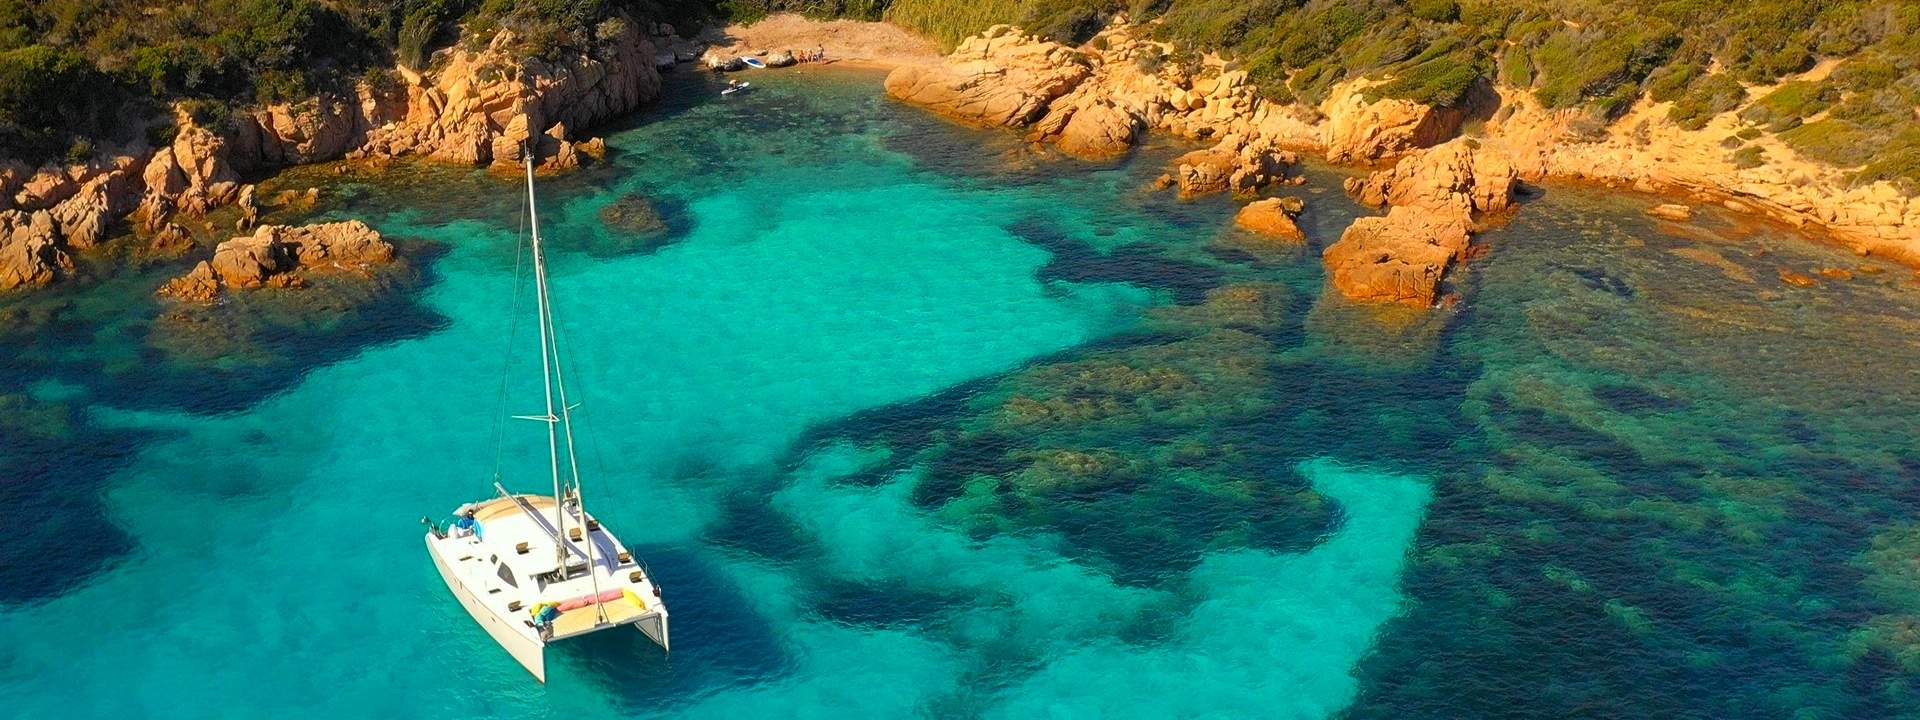 Ihr Kabinencharter in Korsika an Bord eines Katamarans mit Skipper